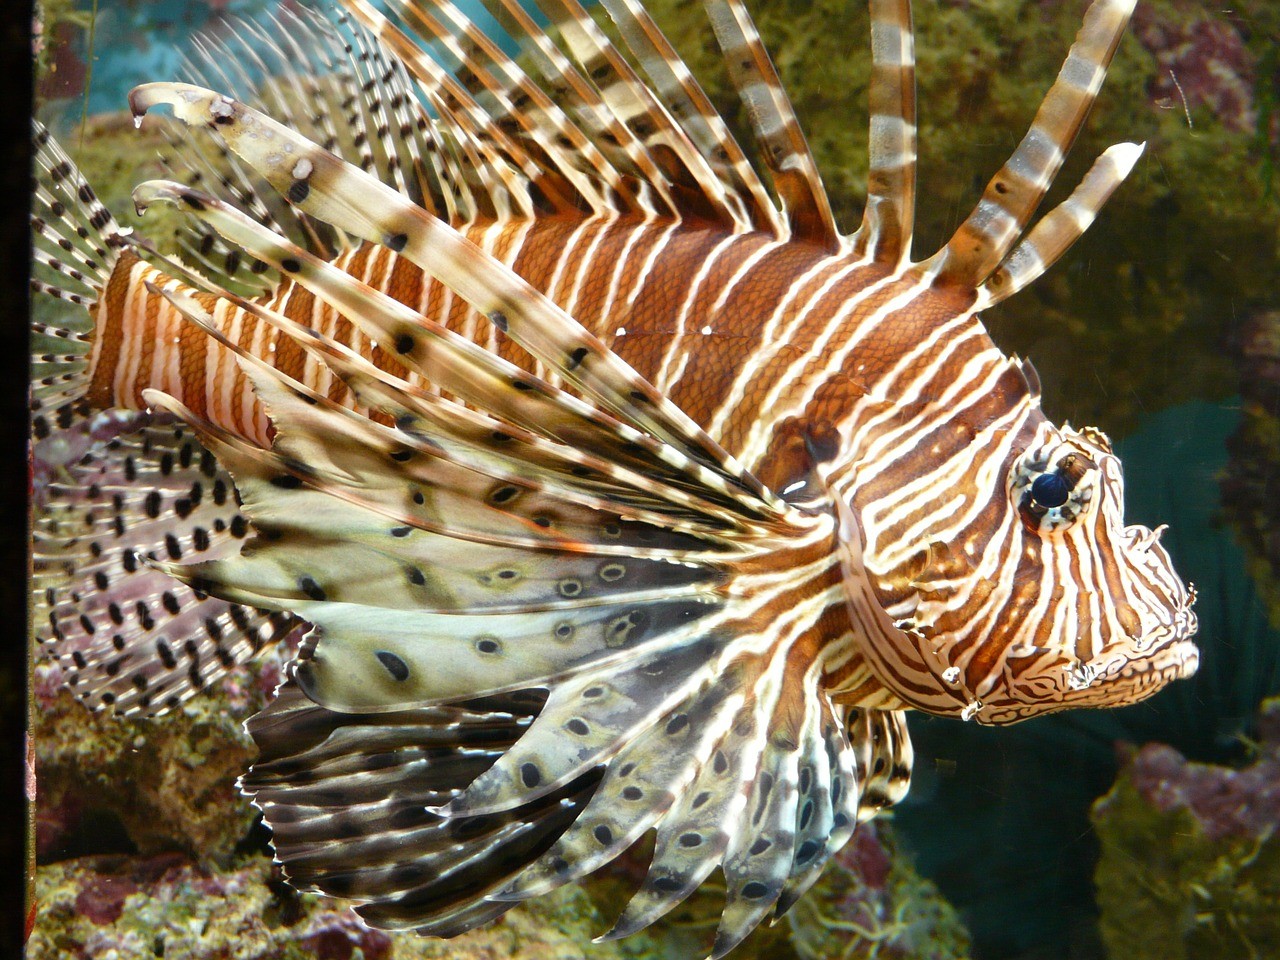 Peixe-leão é um predador marinho que vem devastando vários ecossistemas  (Foto: Pixabay)